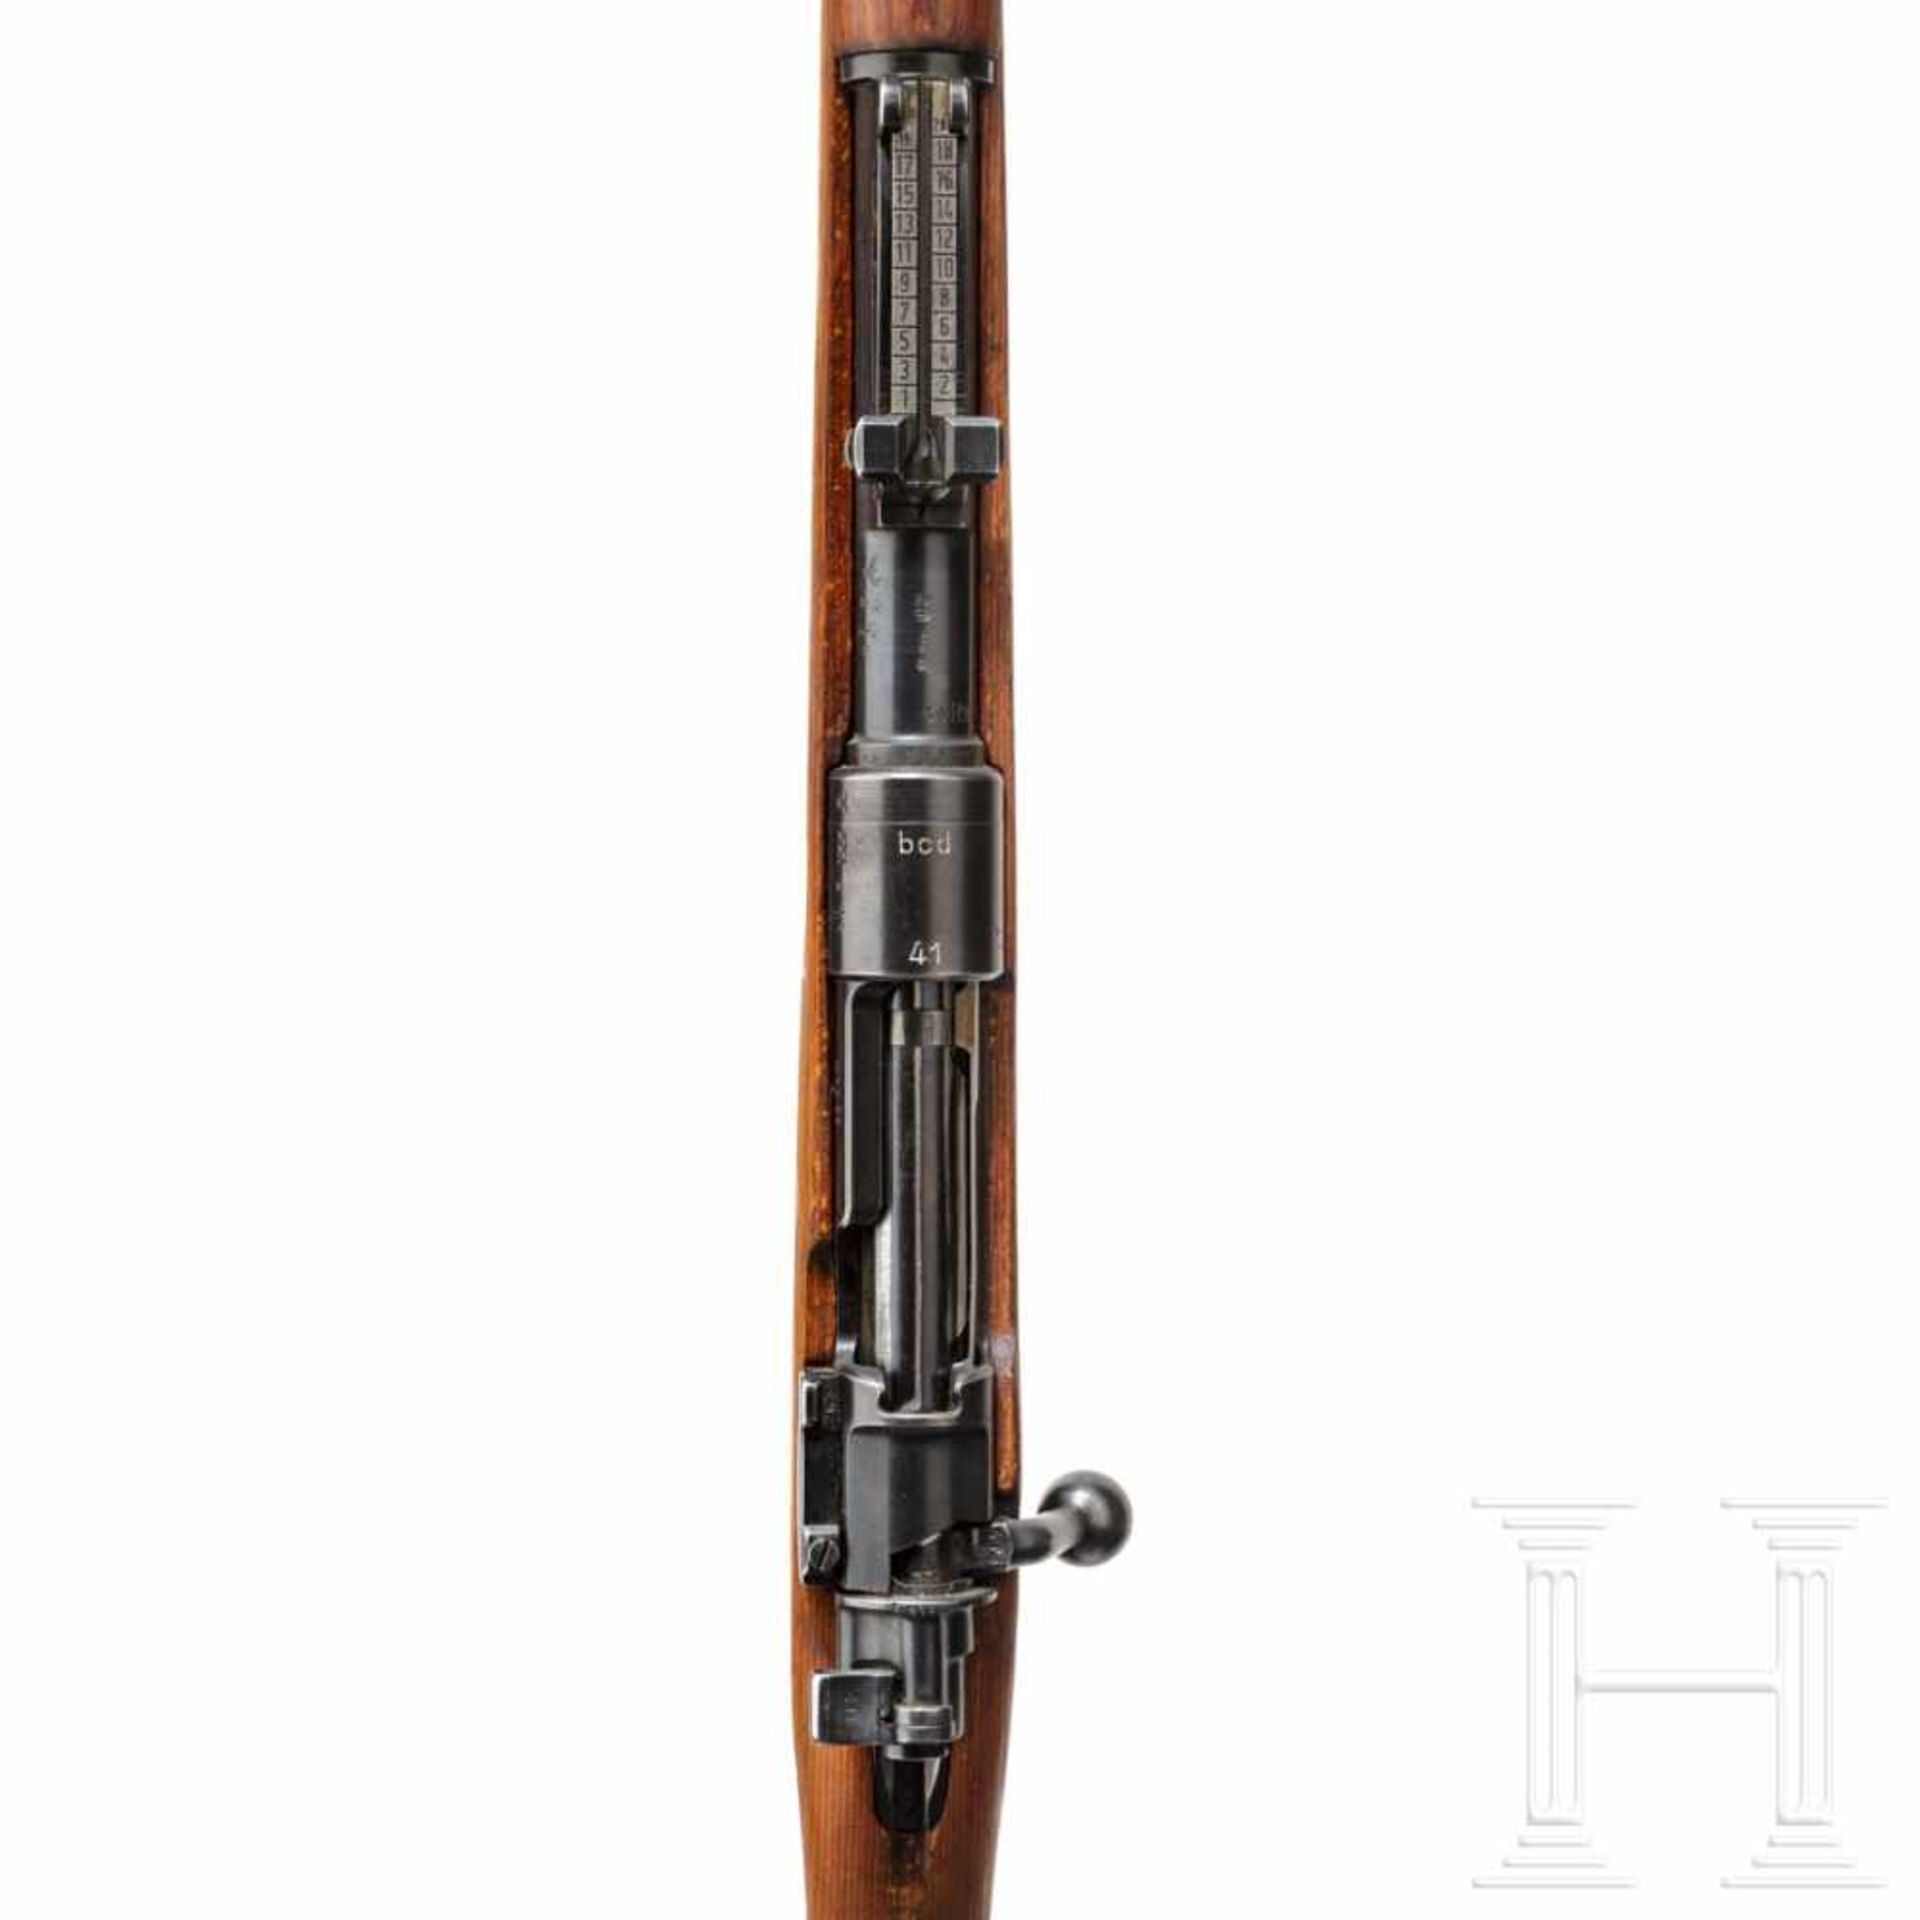 A carbine 98 k, code "bcd - 41"Kal. 8x57 IS, Nr. 415a, nummerngleich bis auf Magazinkasten und - Bild 3 aus 3